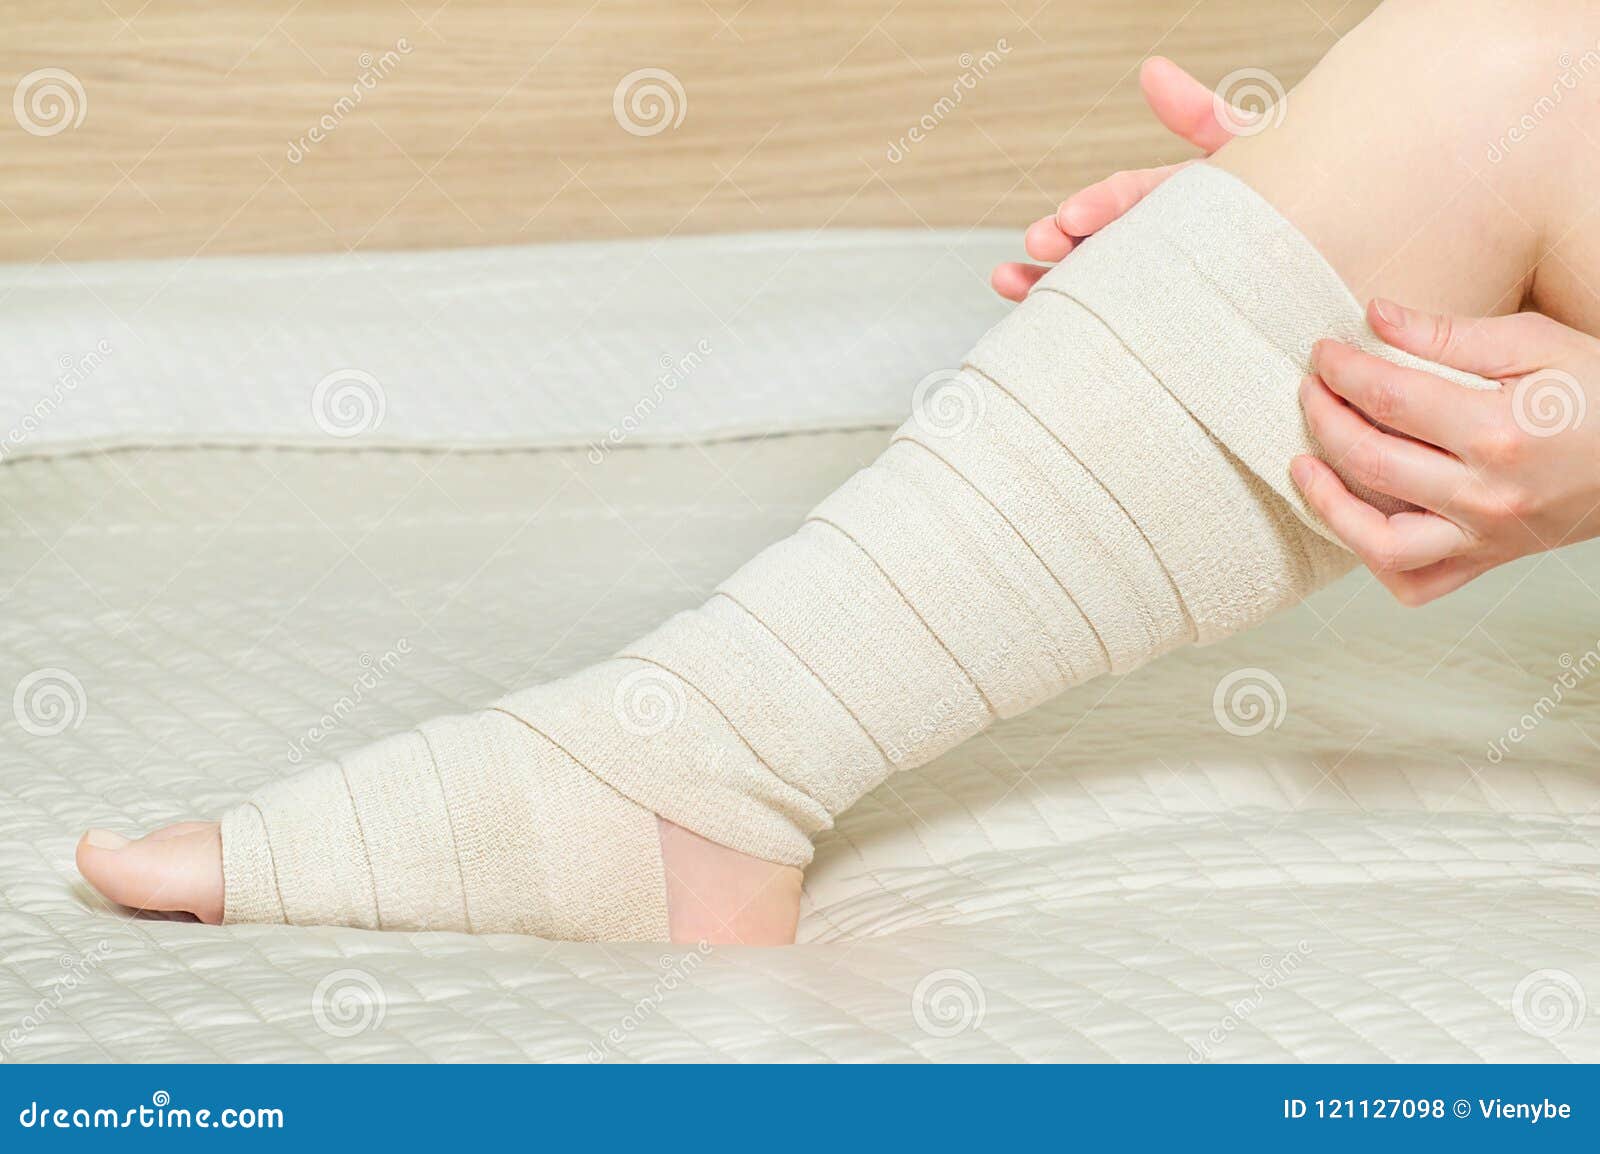 bandage elastica dupa îndepartarea varicozei lista preparatelor pentru tratamentul varicozei